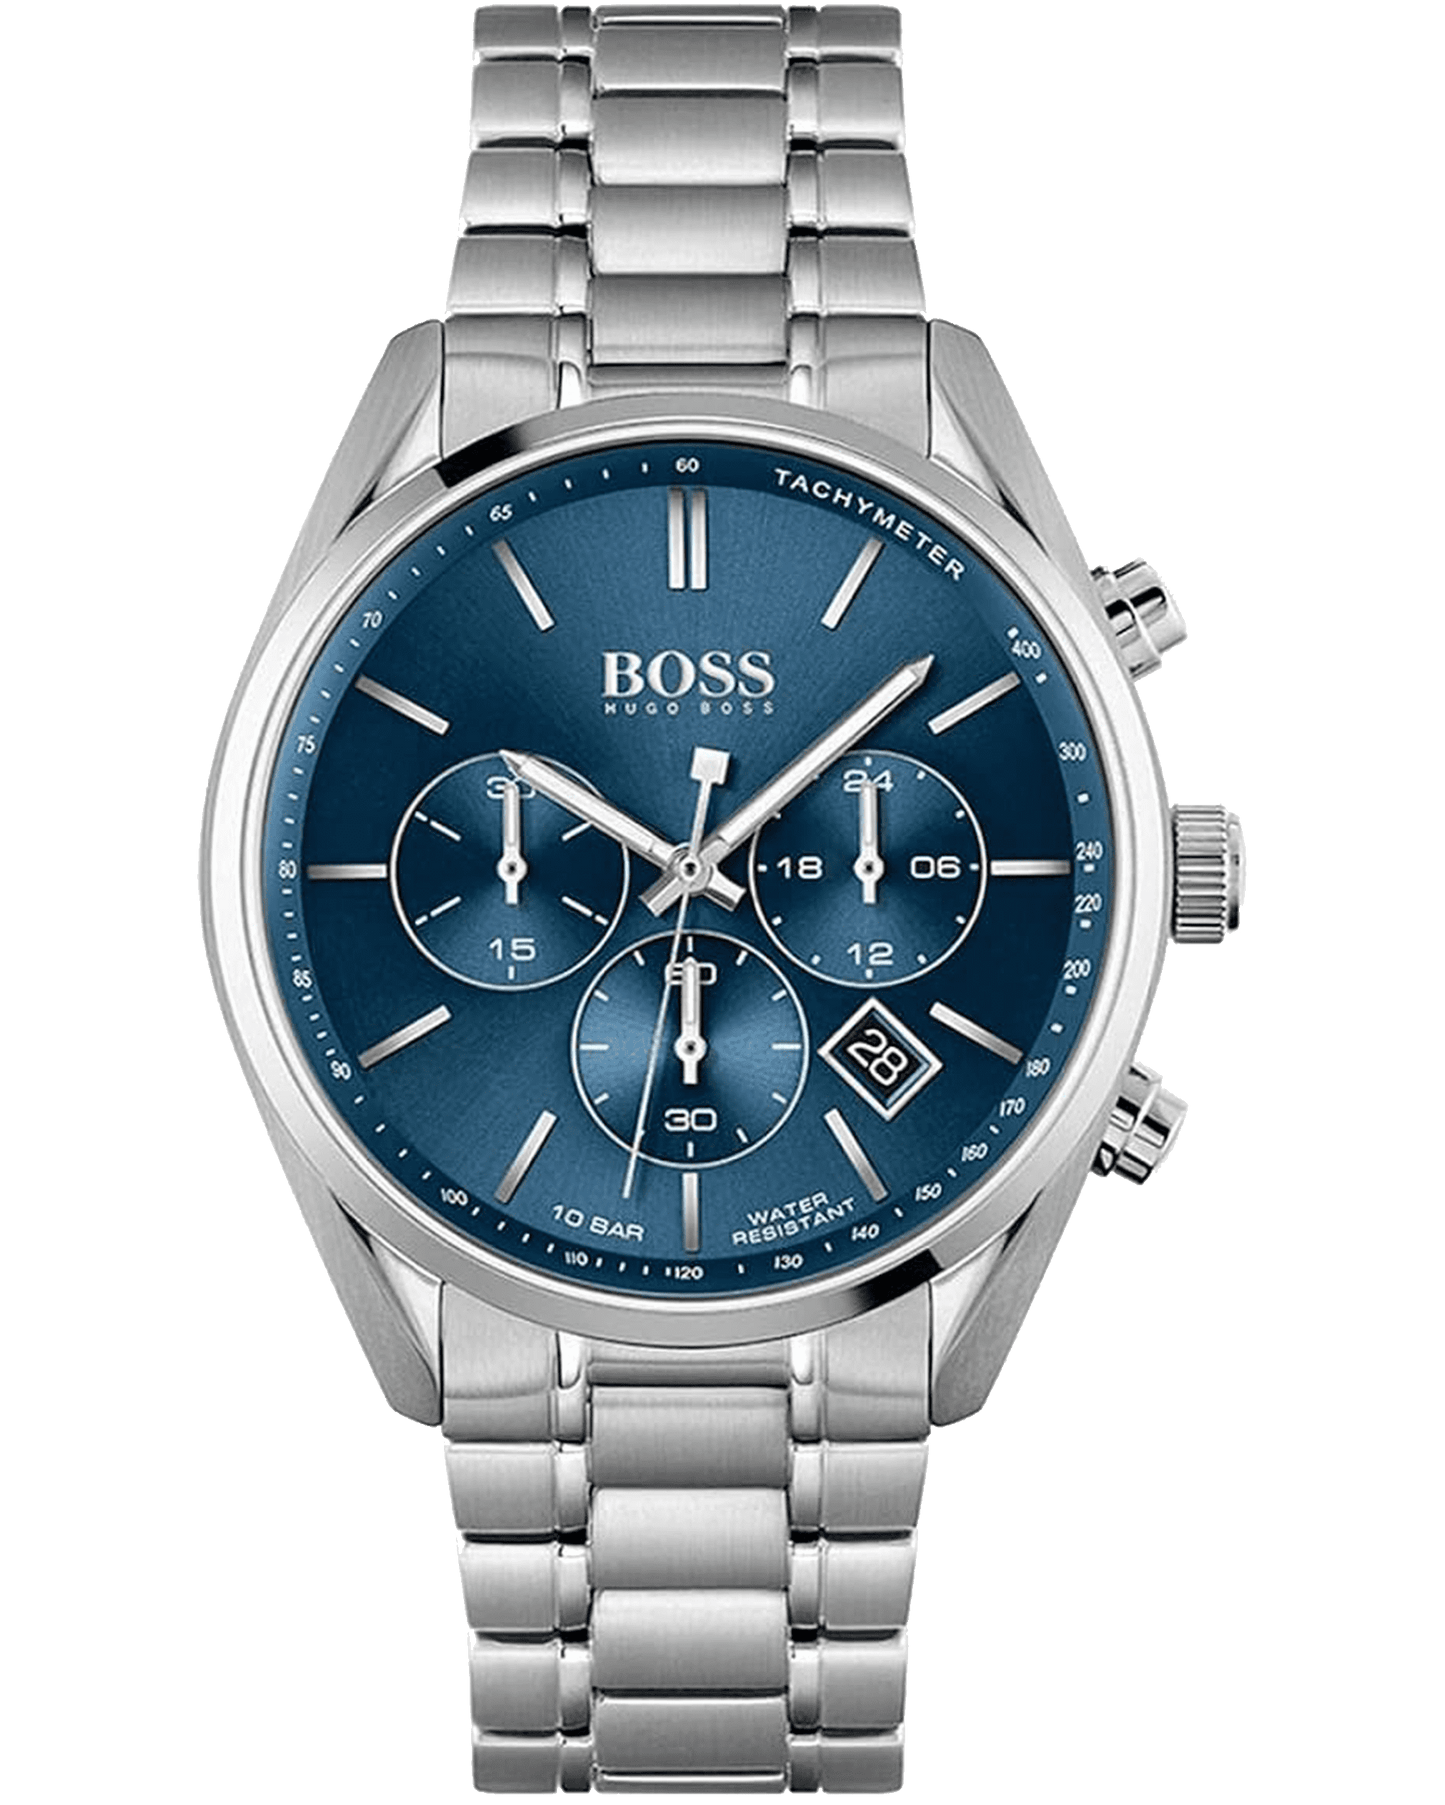 Hugo Boss: Modern Elegance and Timeless Sophistication